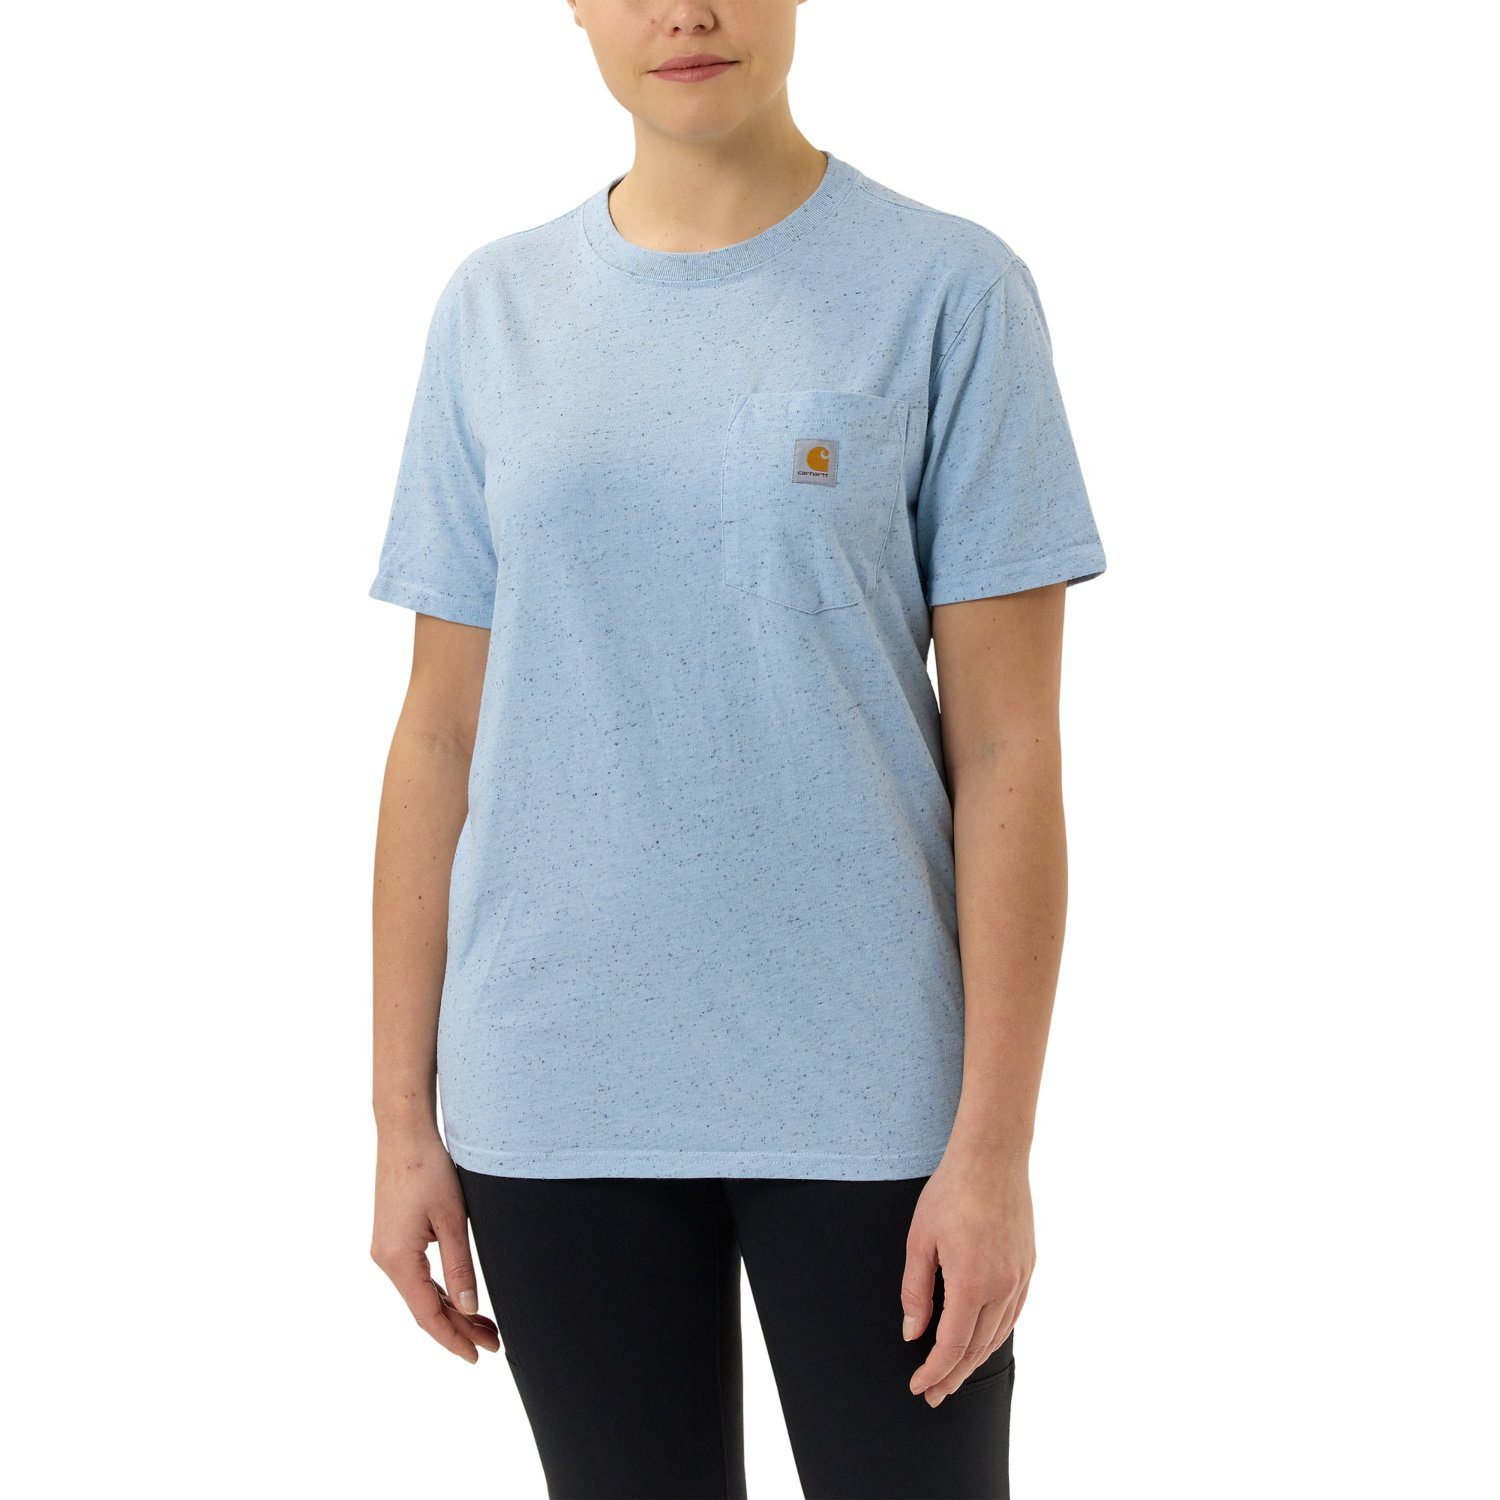 Heavyweight Damen T-Shirt Carhartt powder nep Loose T-Shirt Pocket blue Adult Fit Short-Sleeve Carhartt